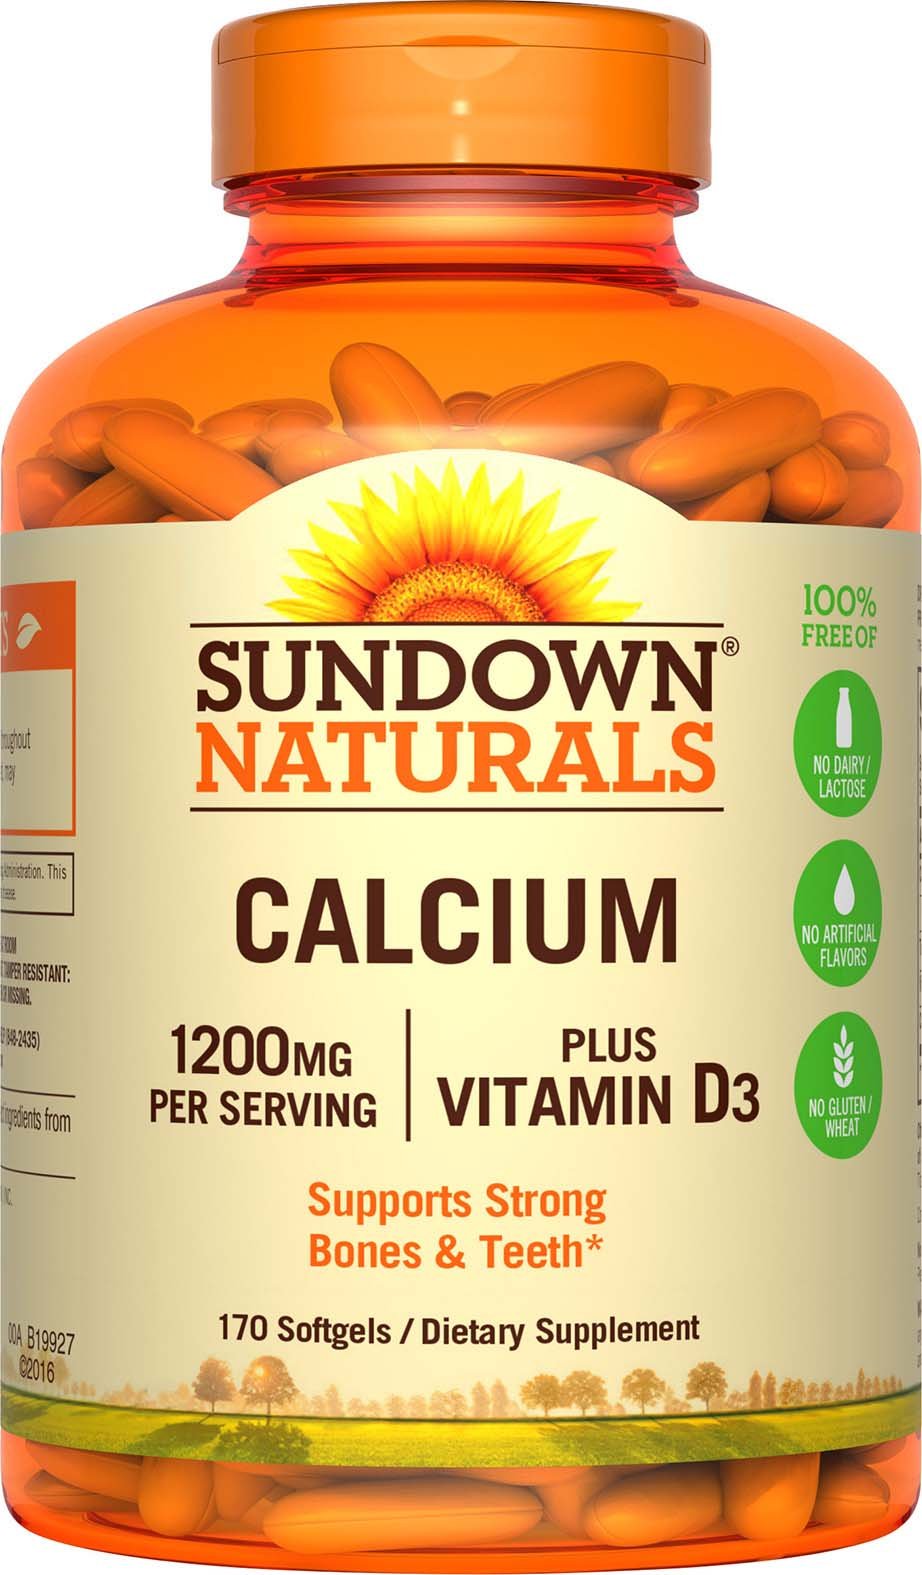 Sundown Calcium Plus Vitamin D3, 1200mg, Soft Gels, 170 Count